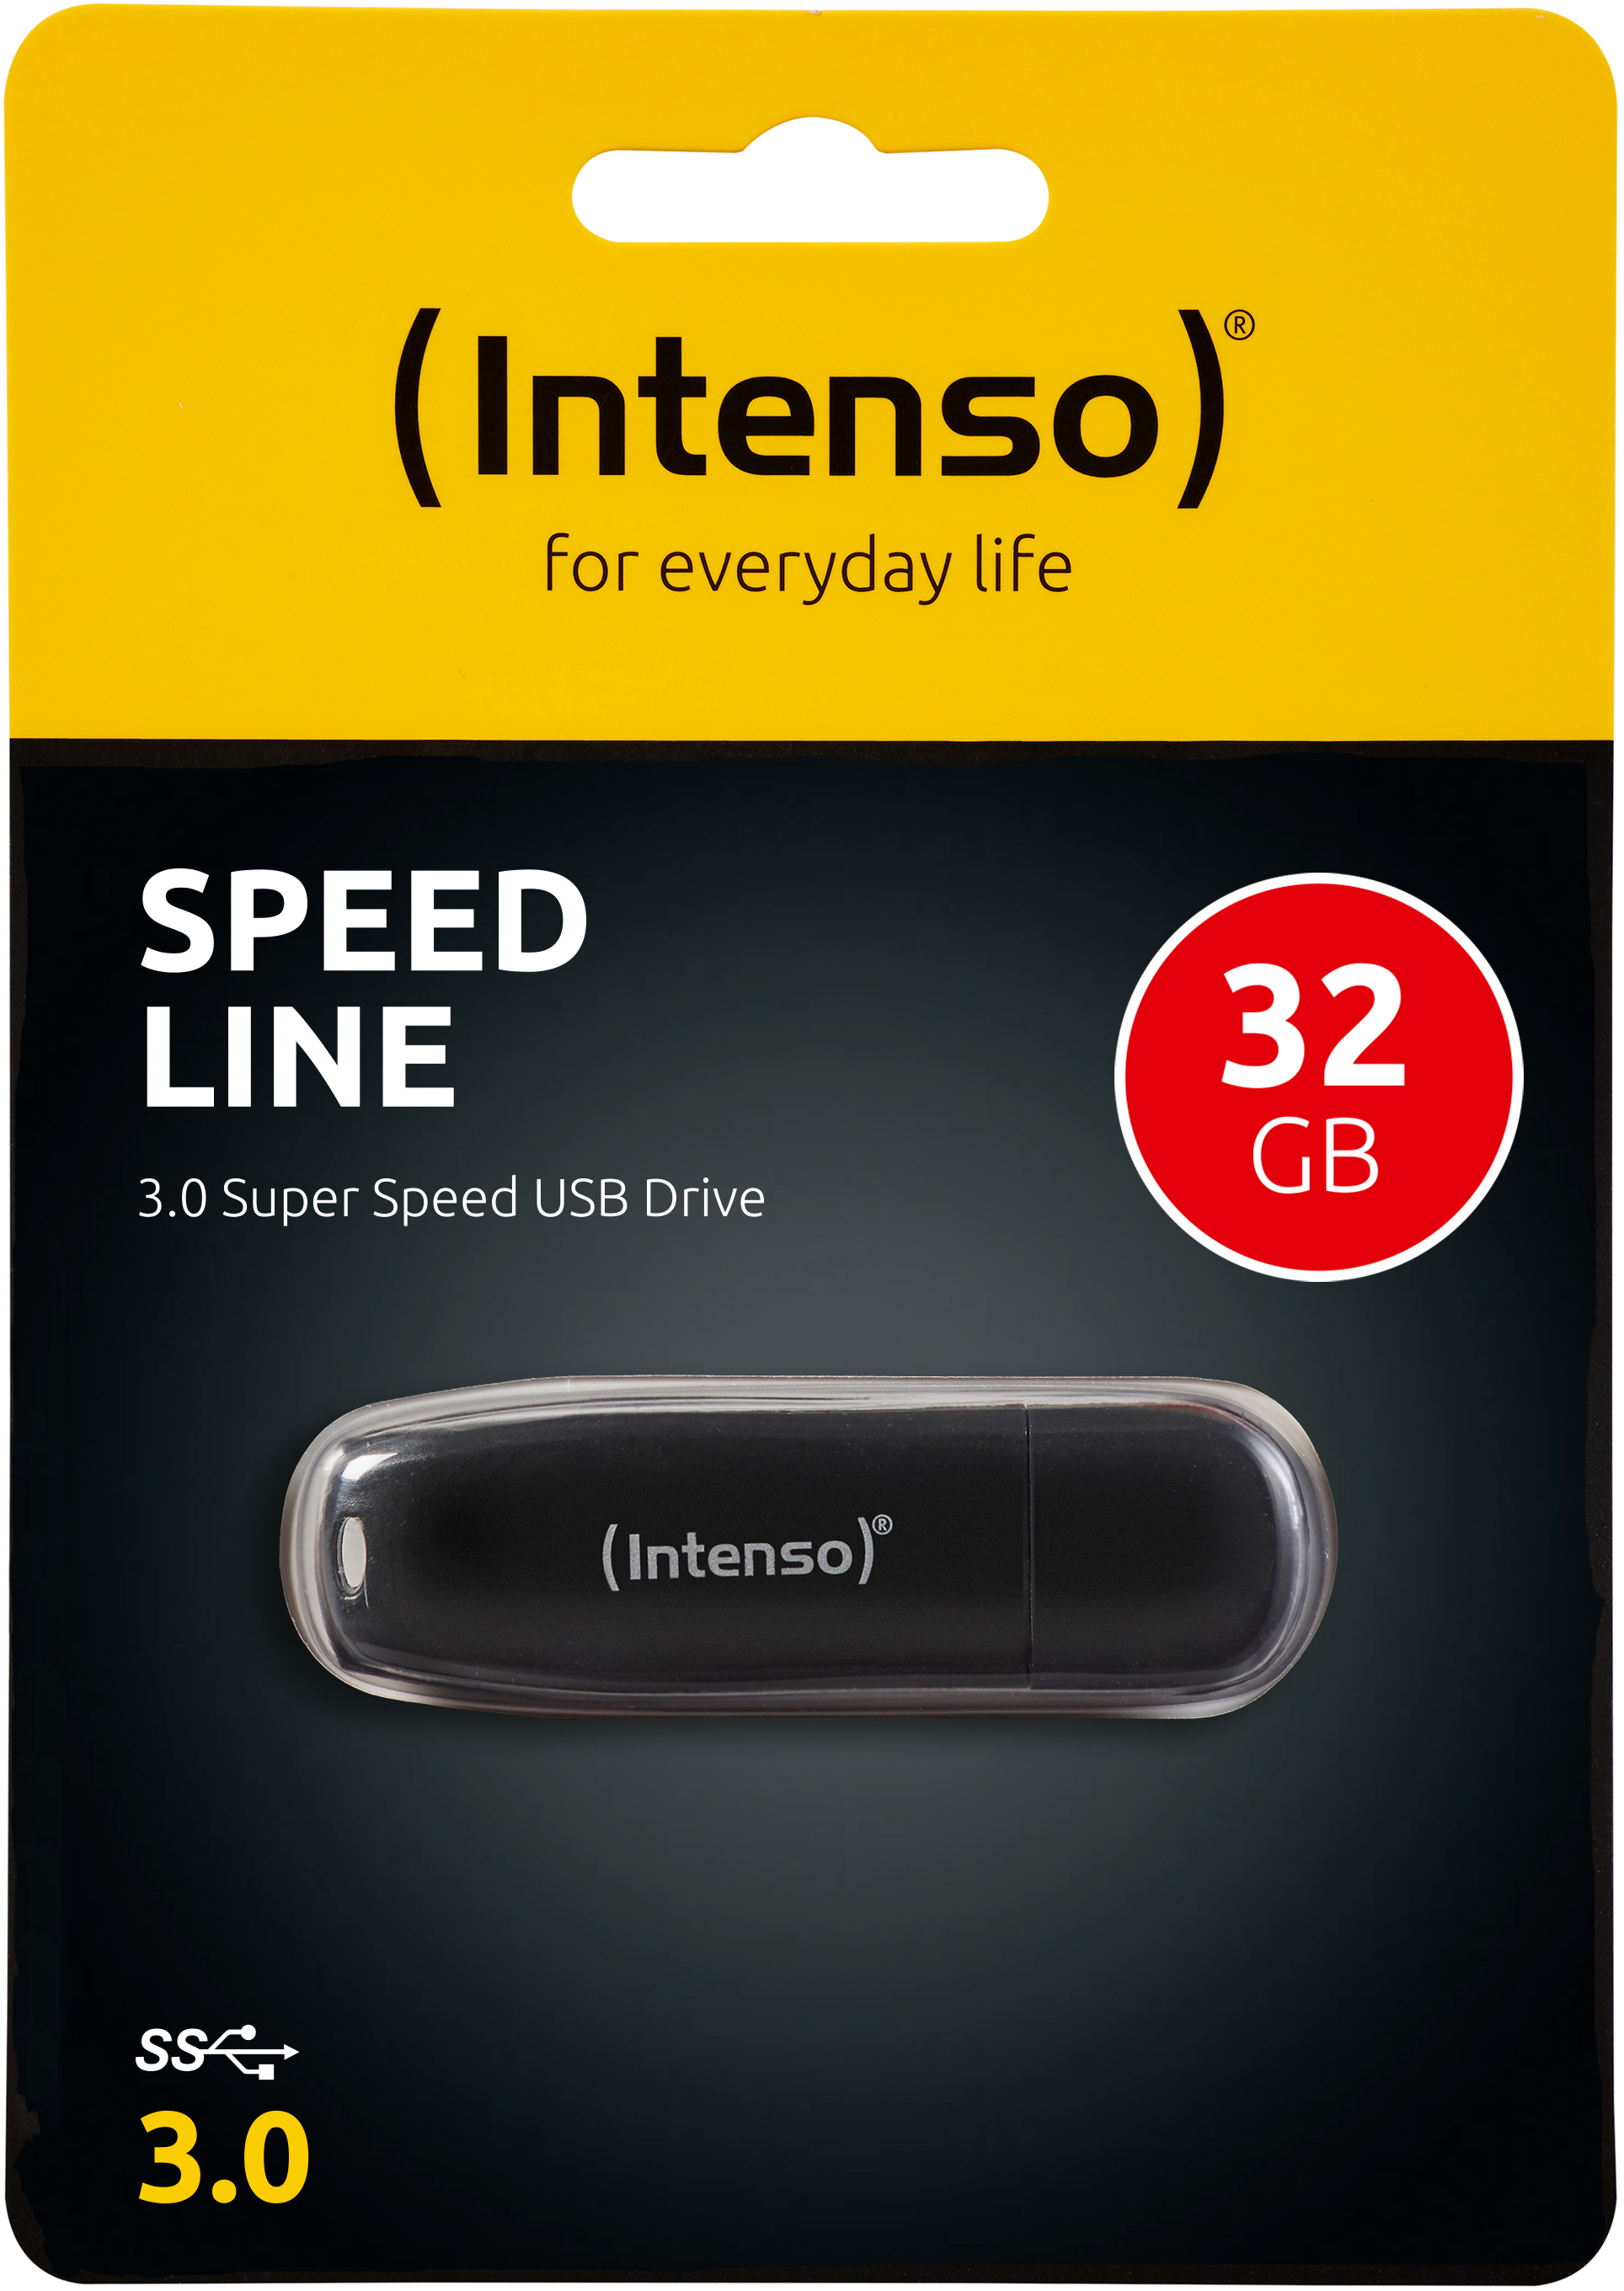 35 Speed 32 Line INTENSO MB/s, Schwarz GB, USB-Stick,